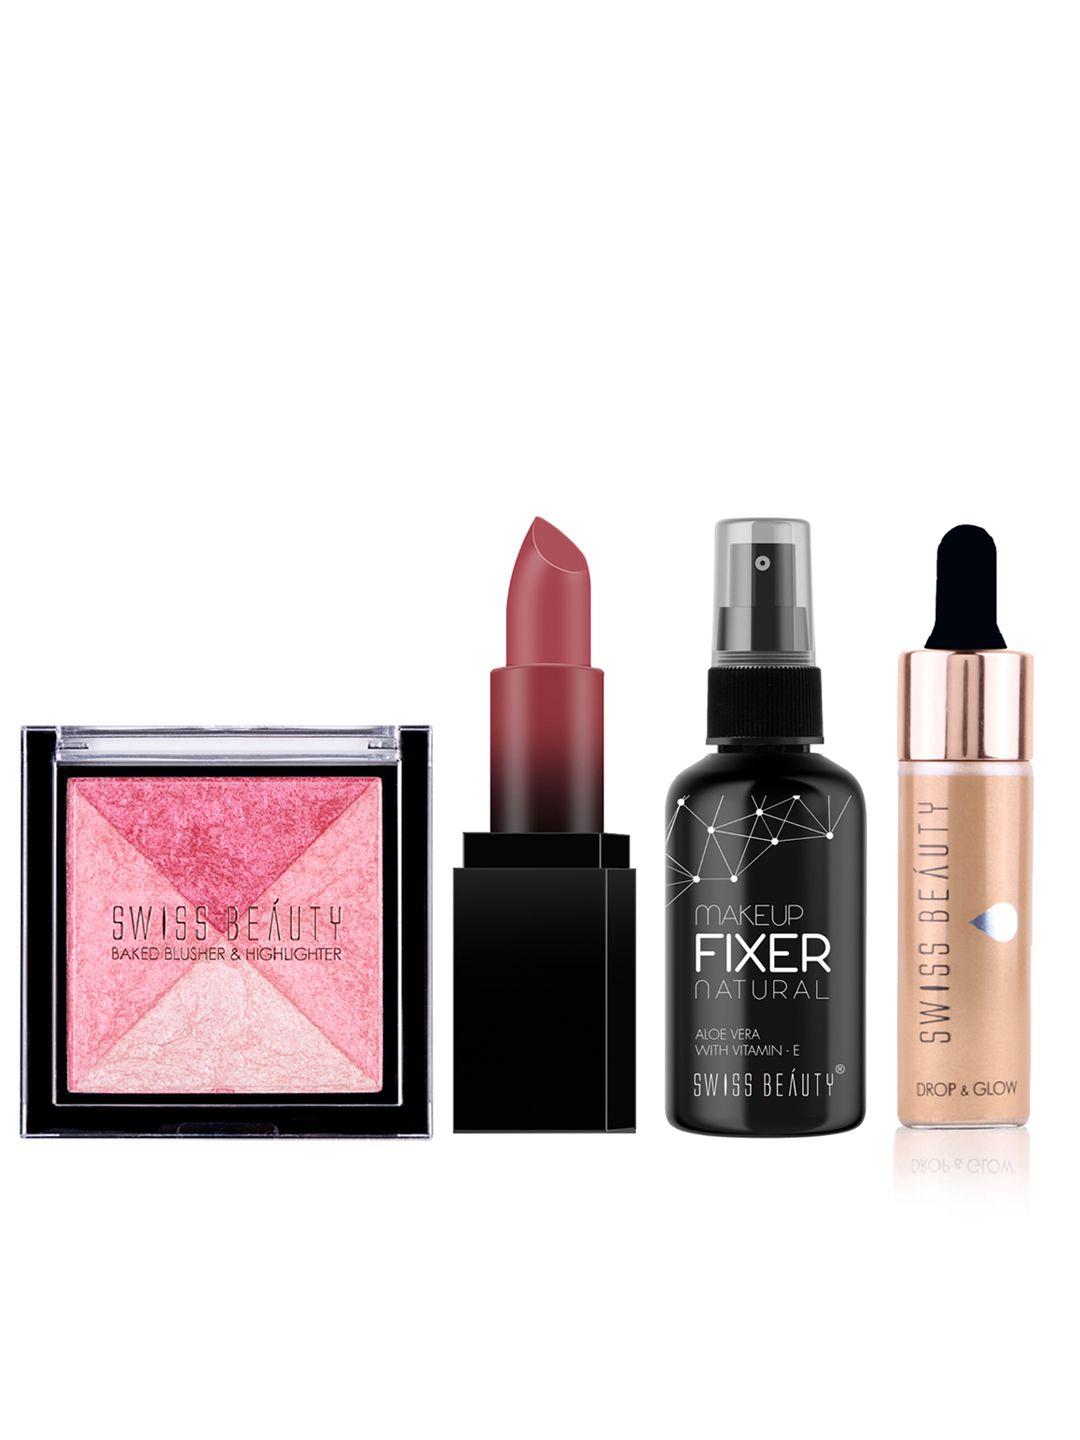 swiss beauty set of makeup fixer + hd matte lipstick + blusher & highlighter + illuminater